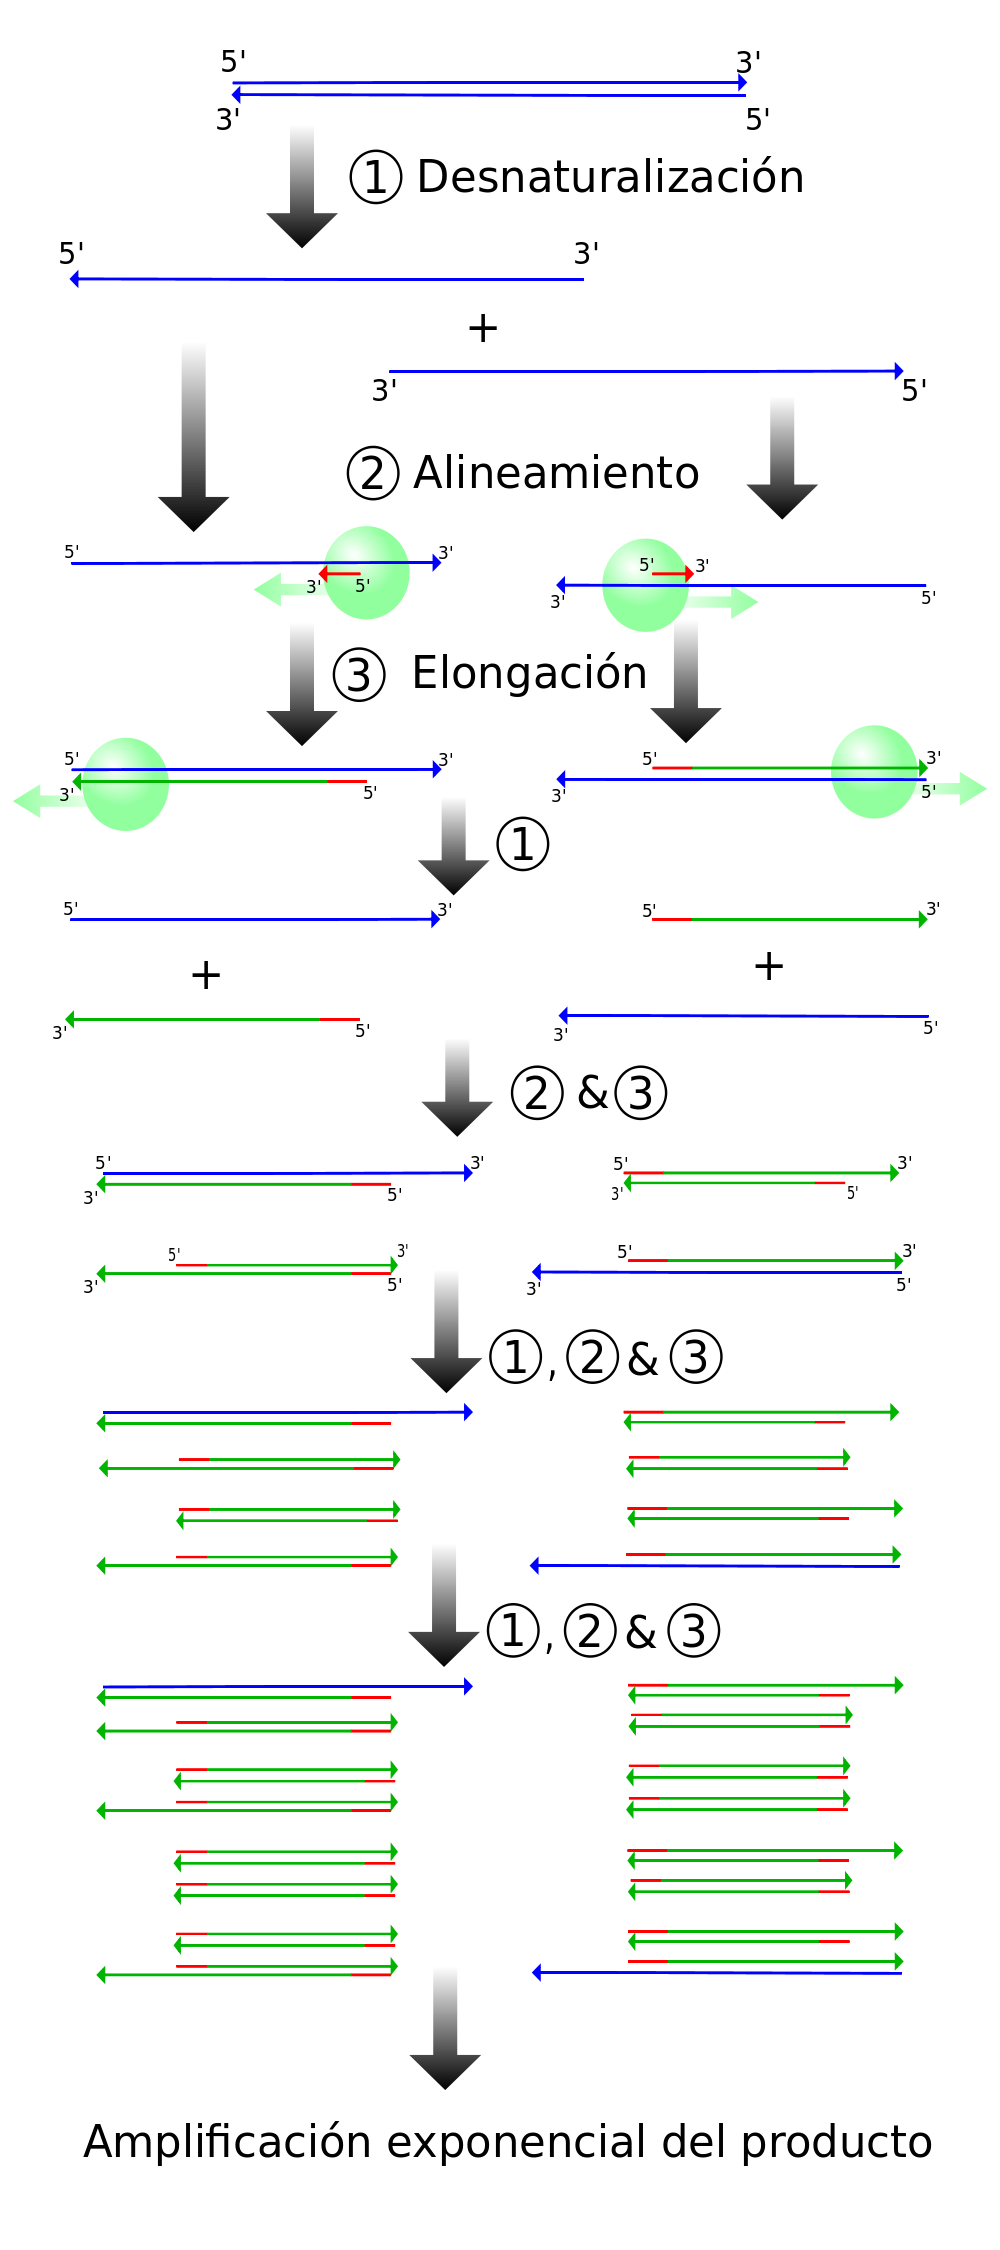 El proceso de PCR consiste en una serie de cambios repetidos de temperatura llamados ciclos; cada ciclo suele consistir en 3 pasos a diferentes temperaturas.